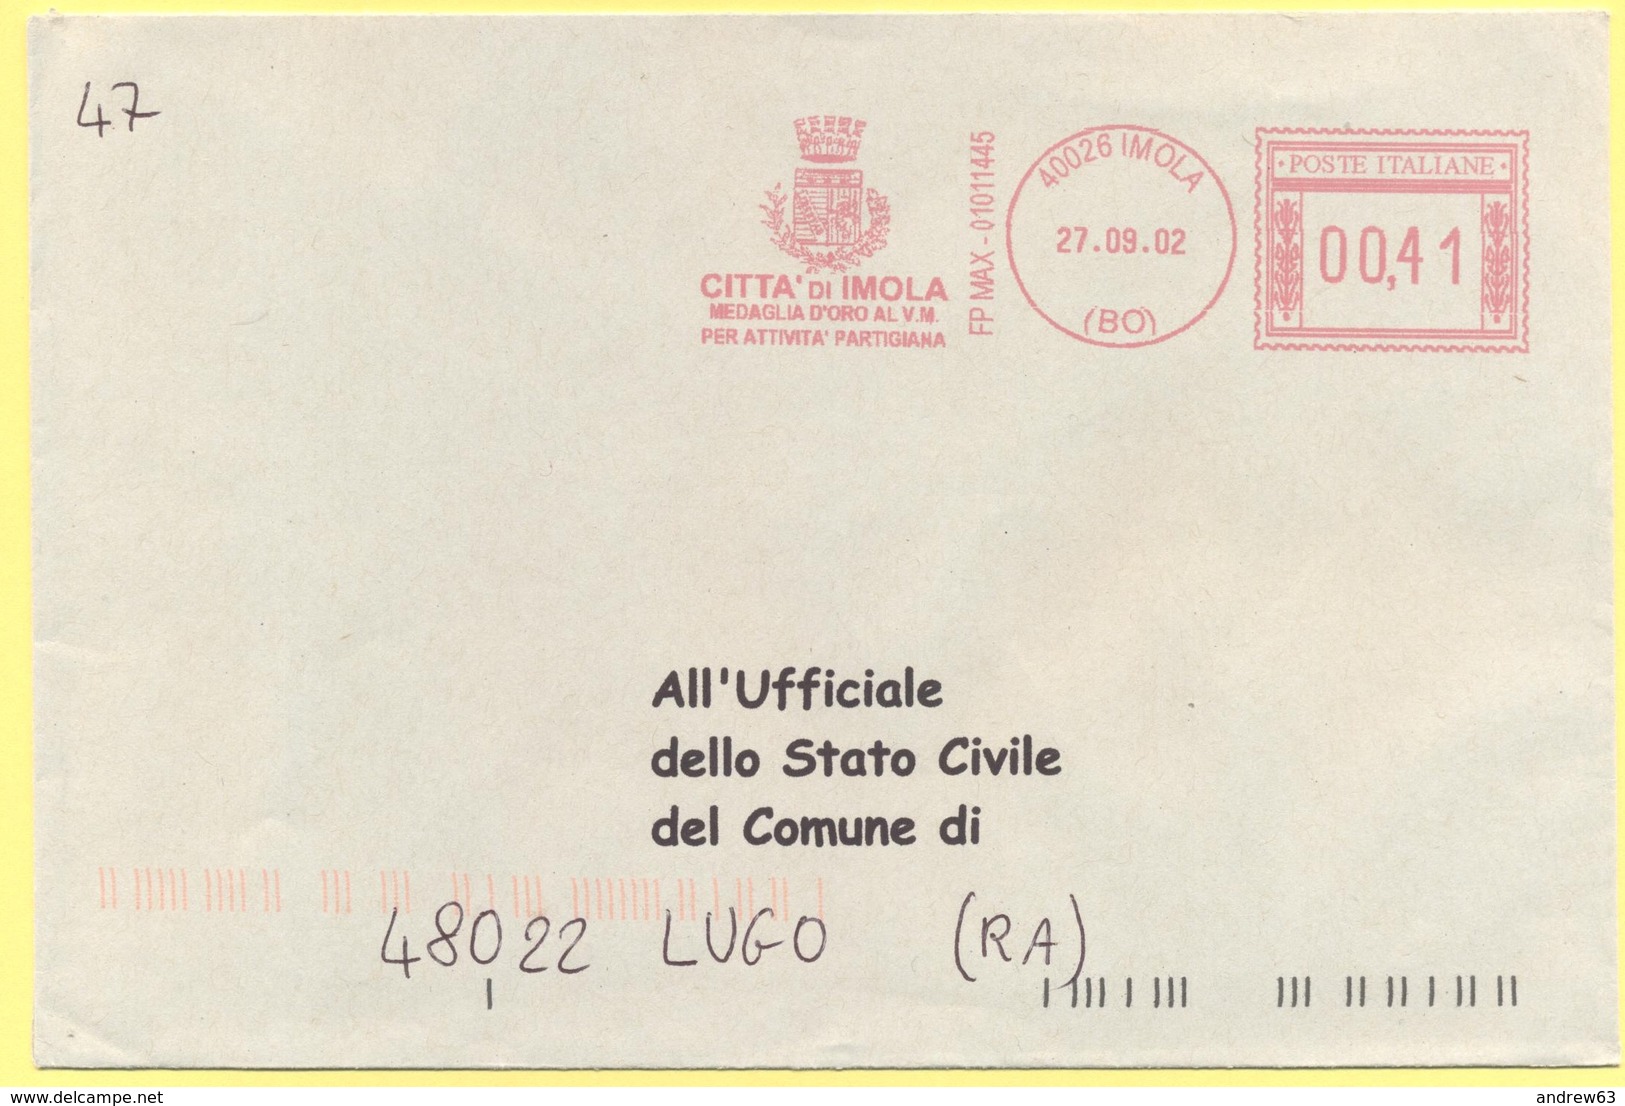 ITALIA - ITALY - ITALIE - 2002 - 00,41 EMA, Red Cancel - Città Di Imola - Viaggiata Da Imola Per Lugo - Macchine Per Obliterare (EMA)